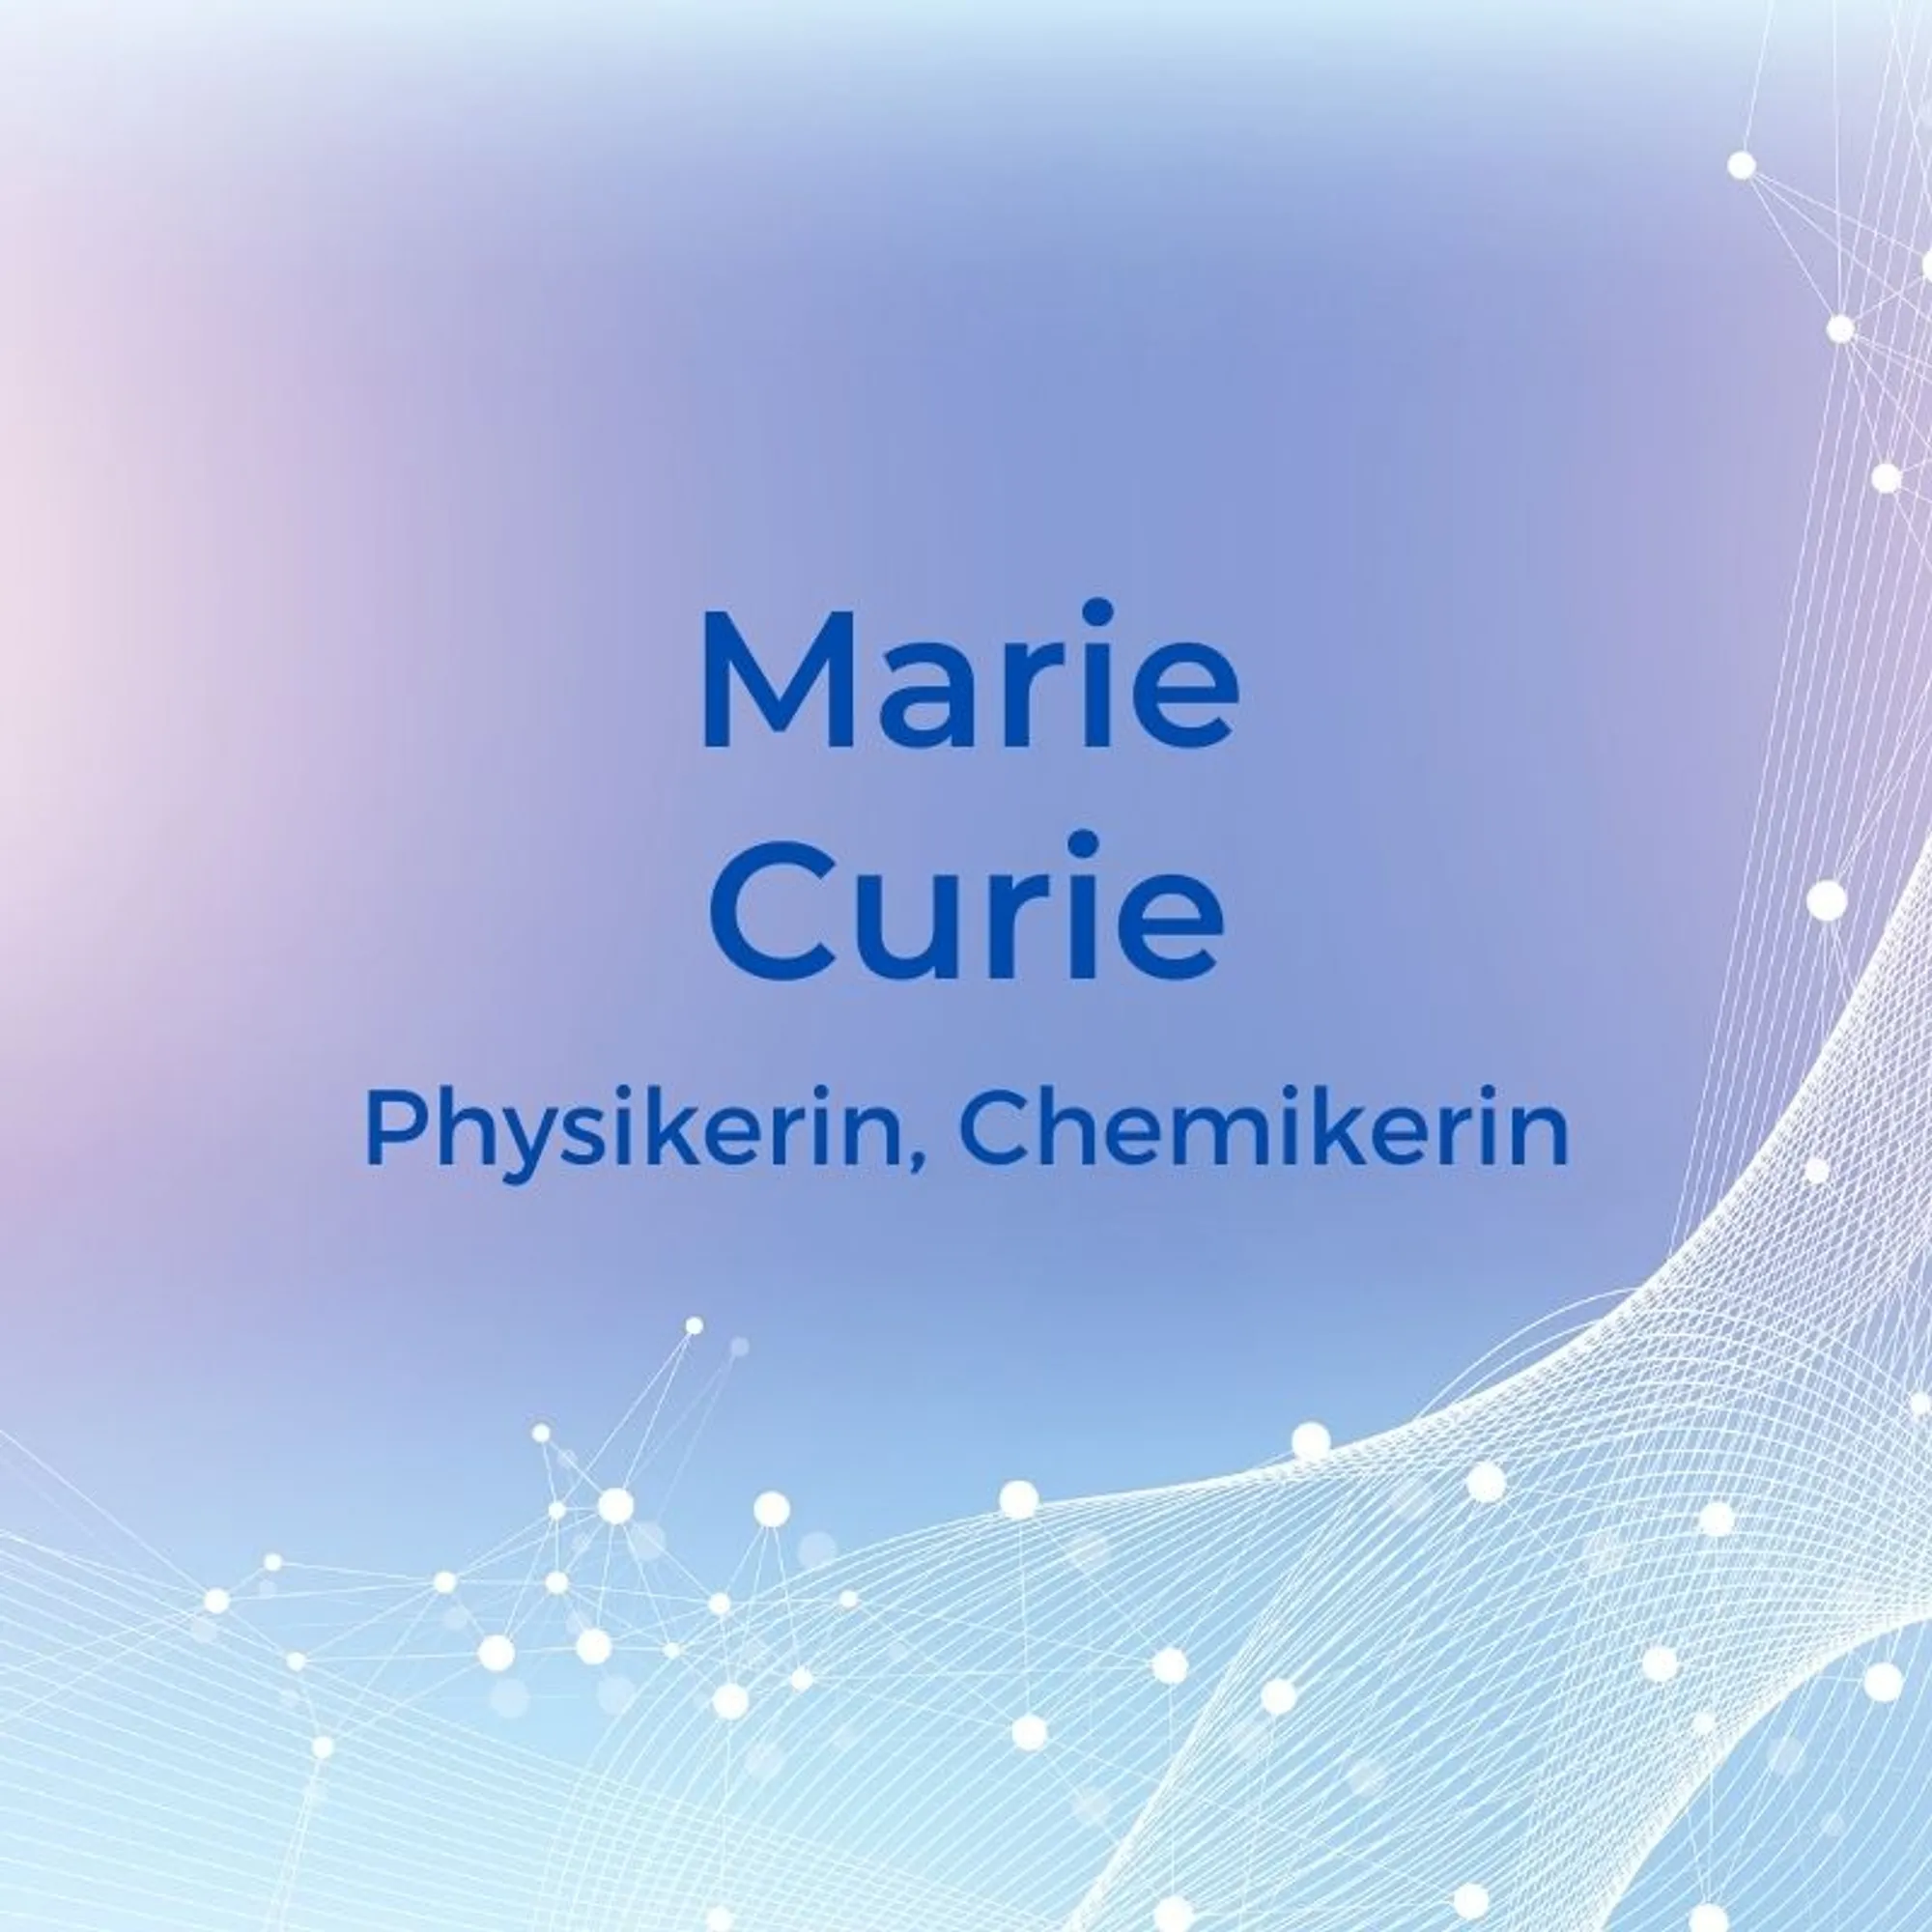 7. Marie Curie (1867–1934) – Physikerin, ChemikerinDiese Naturwissenschaftlerin kennen einige, denn Marie Curie war die erste Frau, die einen Nobelpreis verliehen bekam. Sie forschte zusammen mit ihrem Doktorvater und ihrem Ehemann im Bereich der Radioaktivität und legte damit den Grundstein für die moderne Radiologie. 1911 erhielt sie dann noch einen zweiten Nobelpreis, womit Marie Curie eine von zwei Personen ist, die jemals in zwei unterschiedlichen Kategorien diesen Preis erhalten hat. Ab 1914 leitete sie dann das Radium-Institut in Paris und setzte sich dort besonders für die Förderung von Frauen und ausländischen Wissenschaftlern ein.
